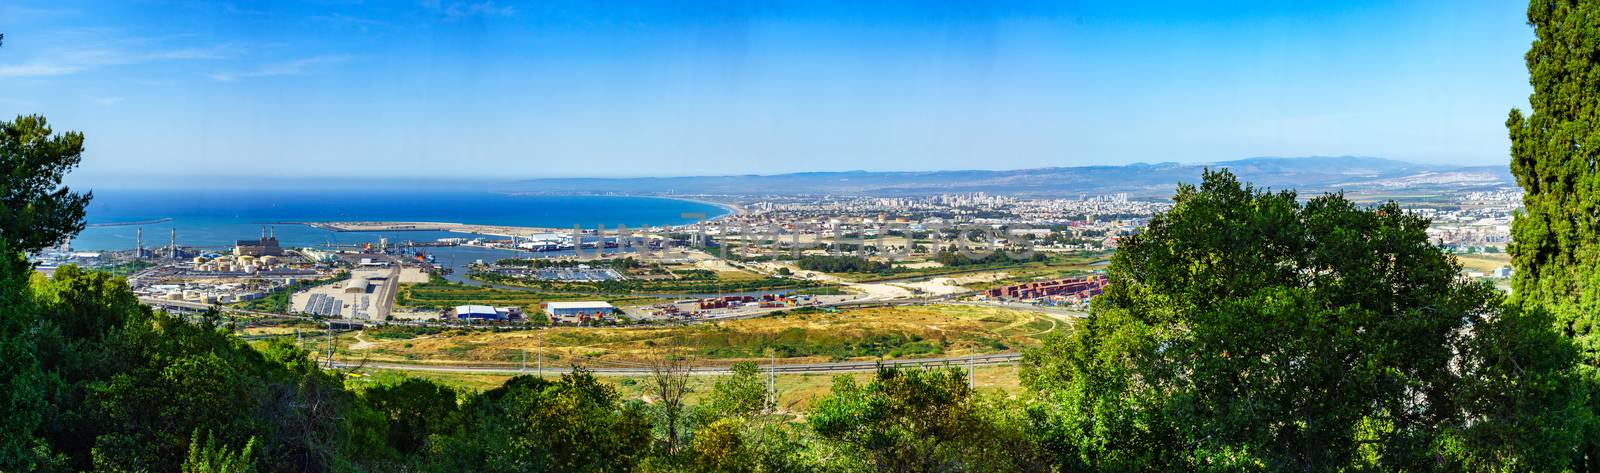 Panoramic view of Haifa bay by RnDmS